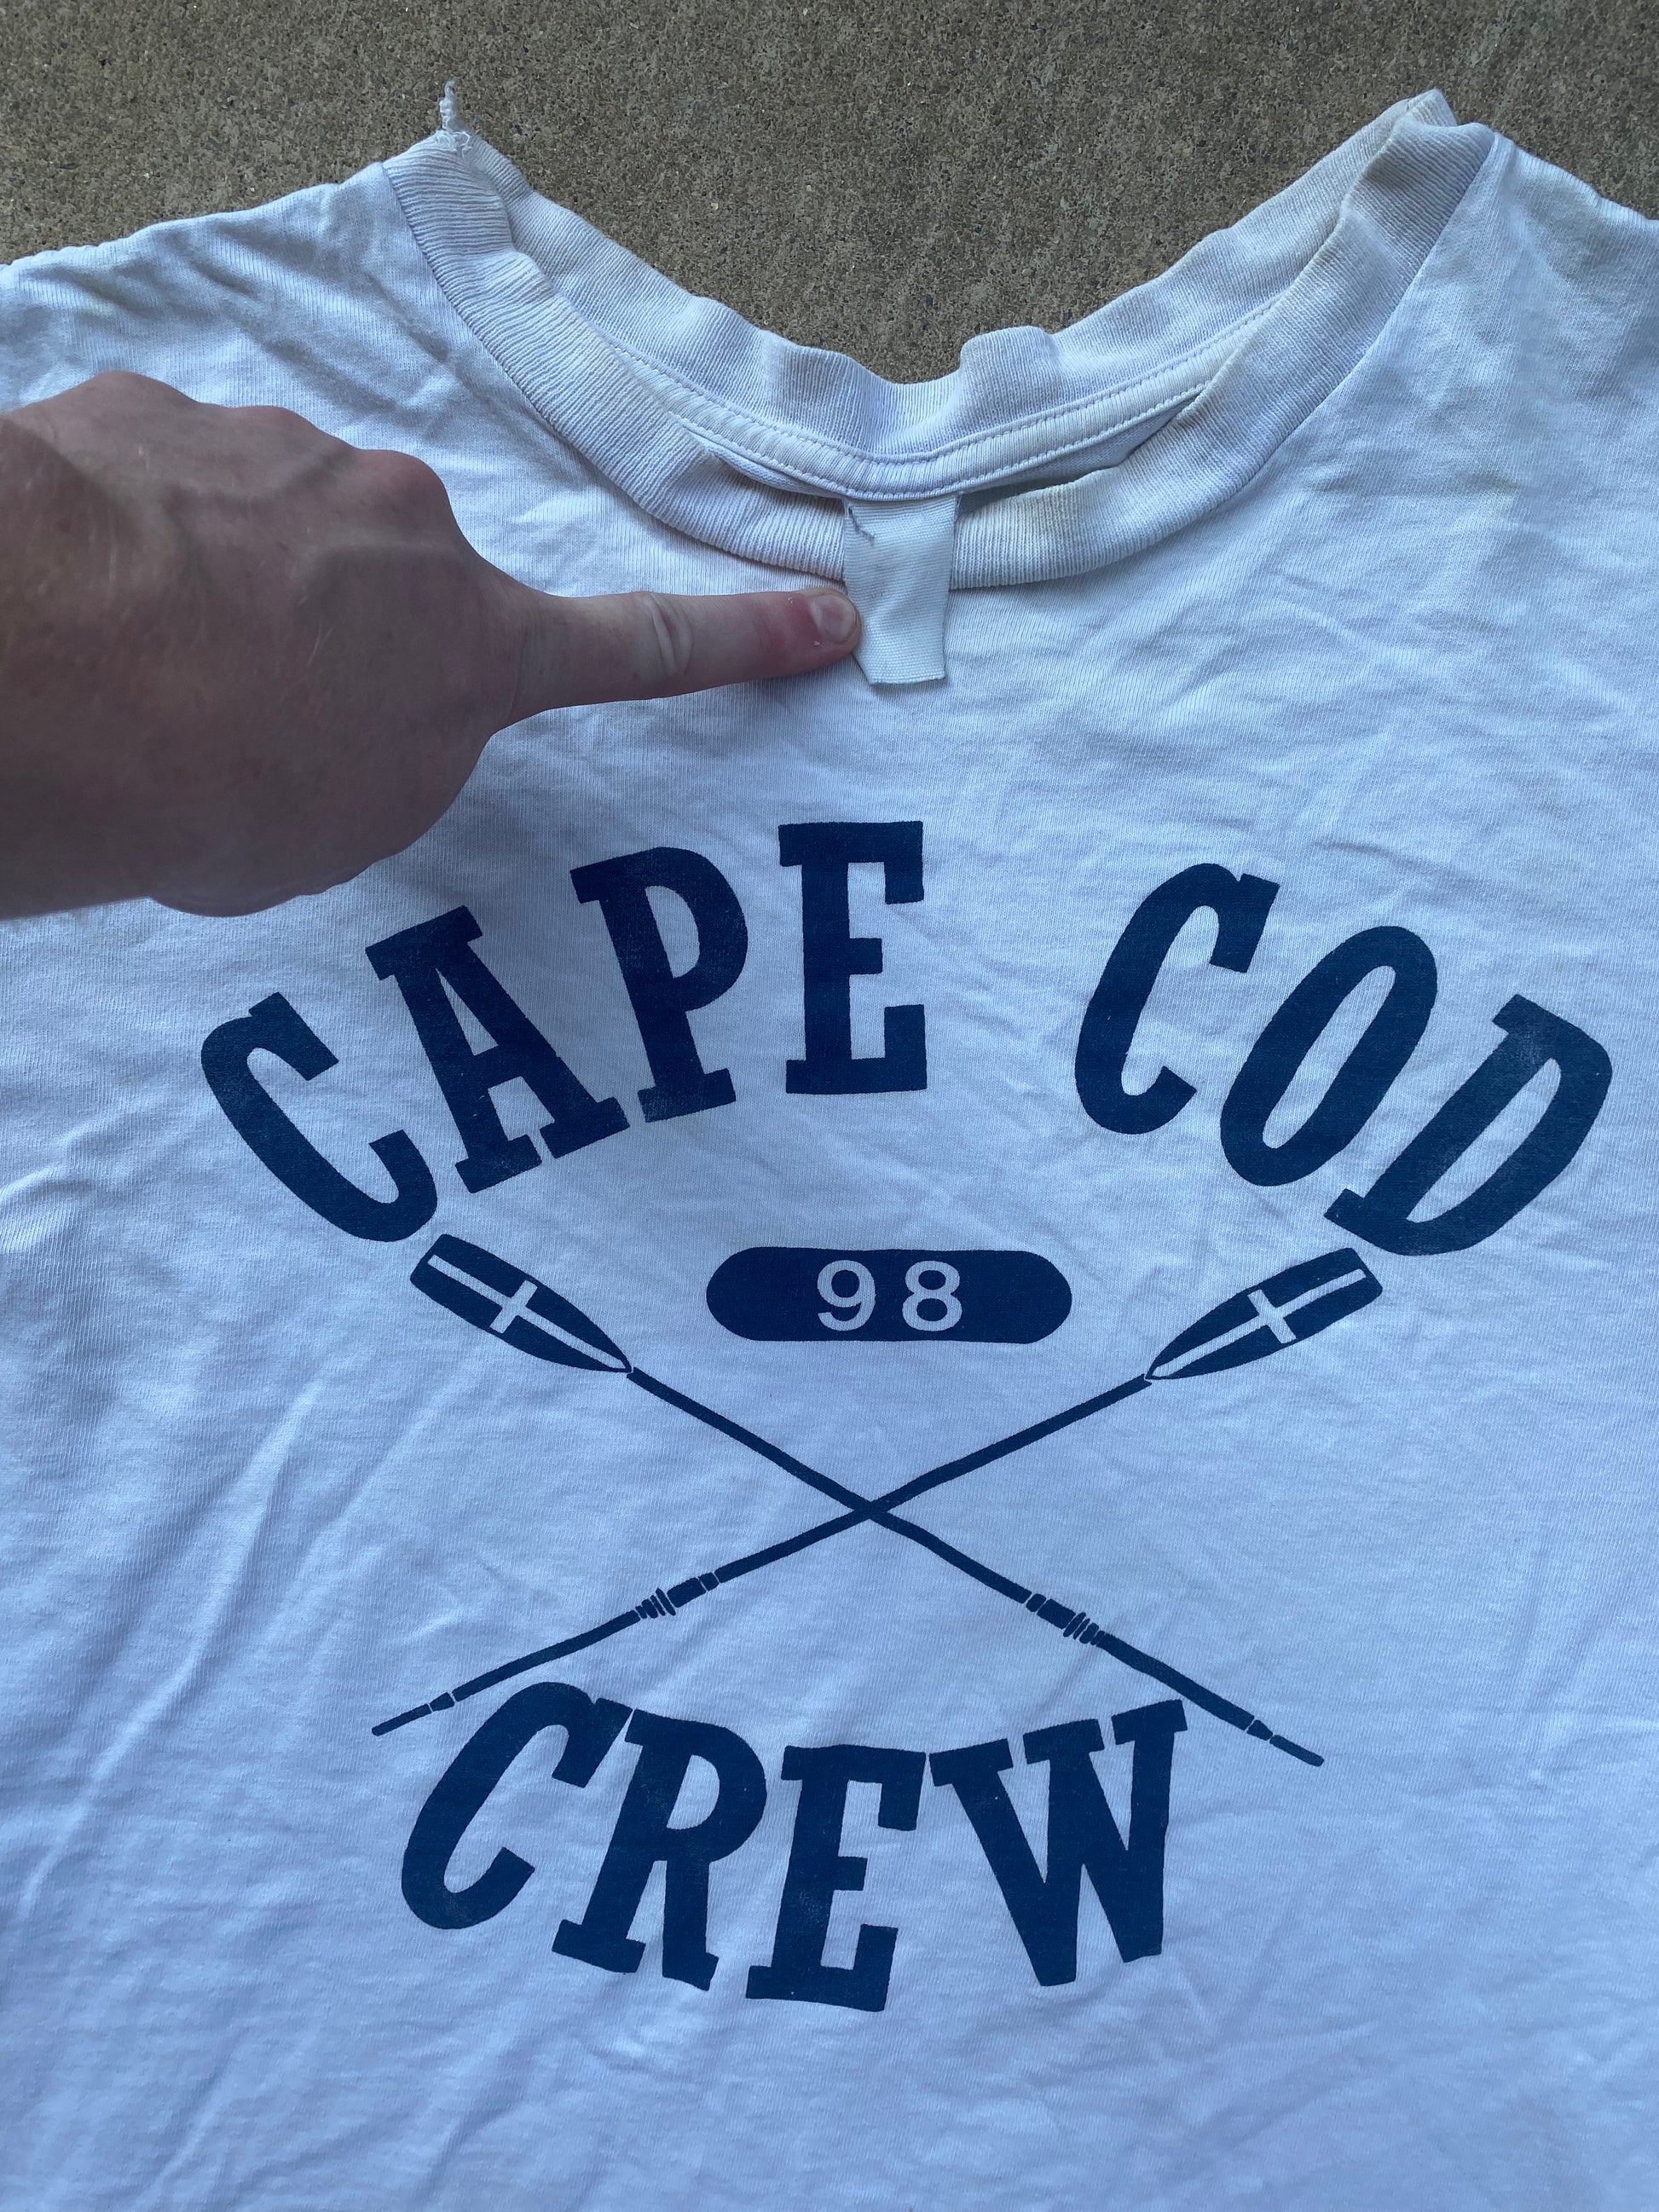 Cape Cod Crew Tee - Brimm Archive Wardrobe Research